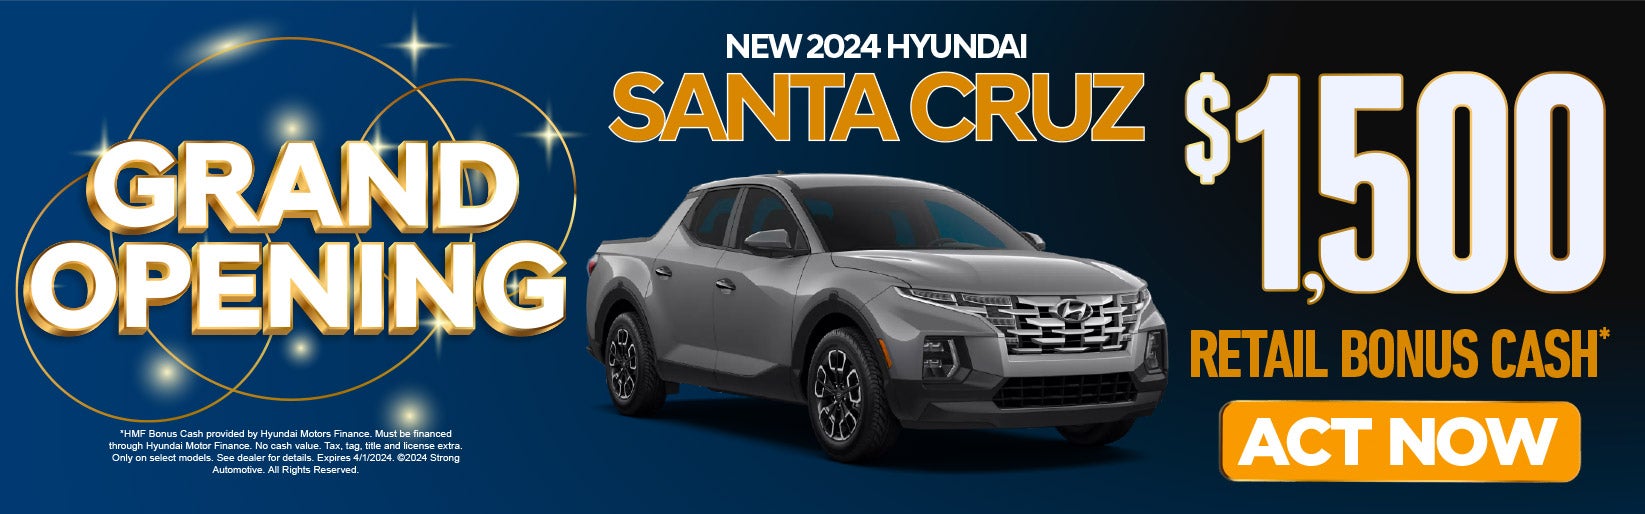 New 2024 Hyundai Santa Cruz $1500 Retail Bonus Cash*